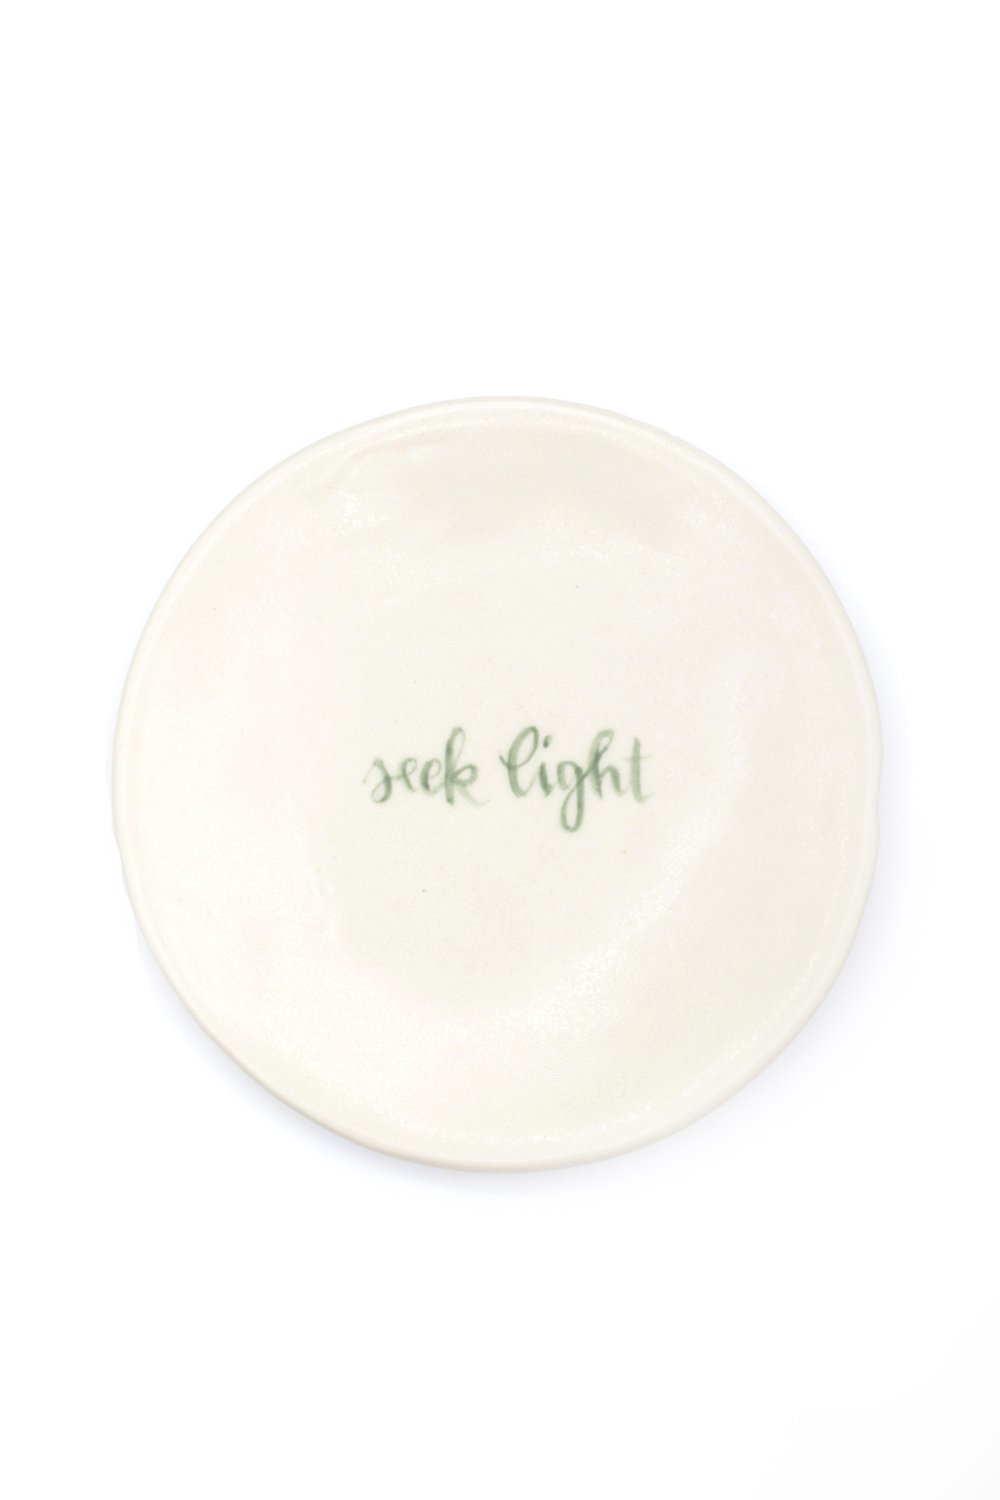 Affirmation Jewelry Dish - "Seek light"